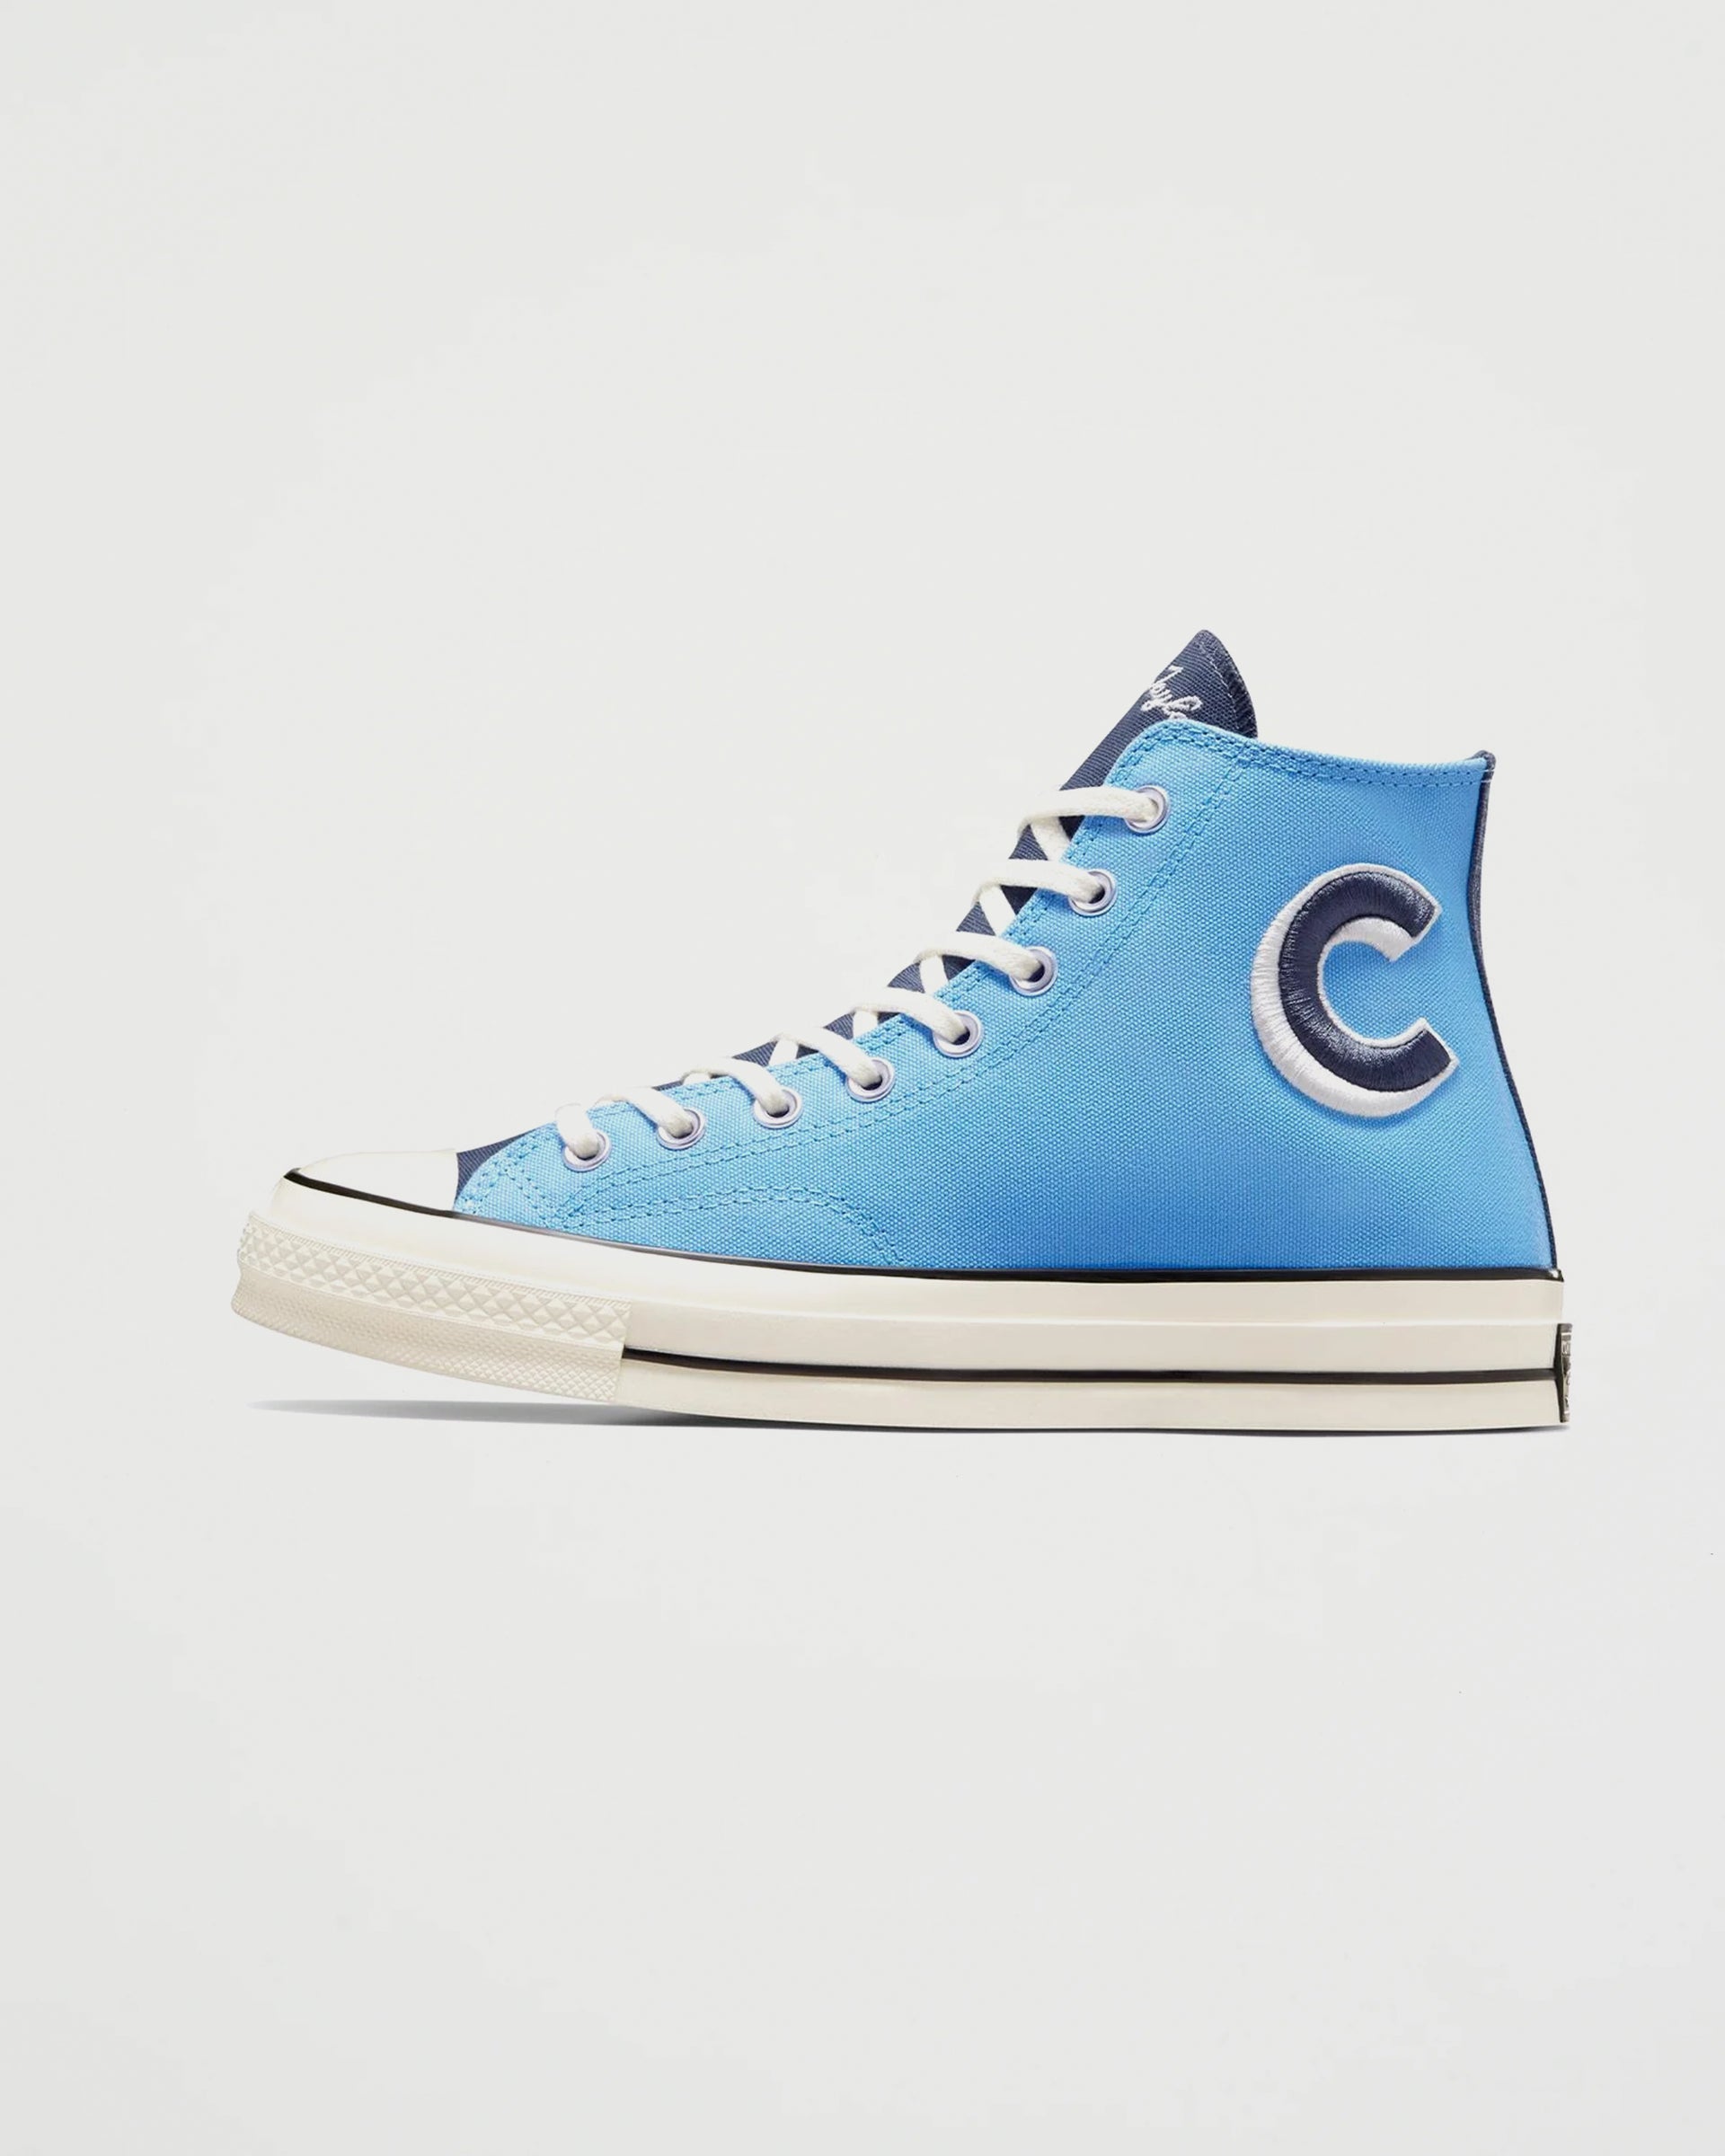 Converse Chuck 70 Hi Letterman Light Blue Shoes Sneakers Unisex